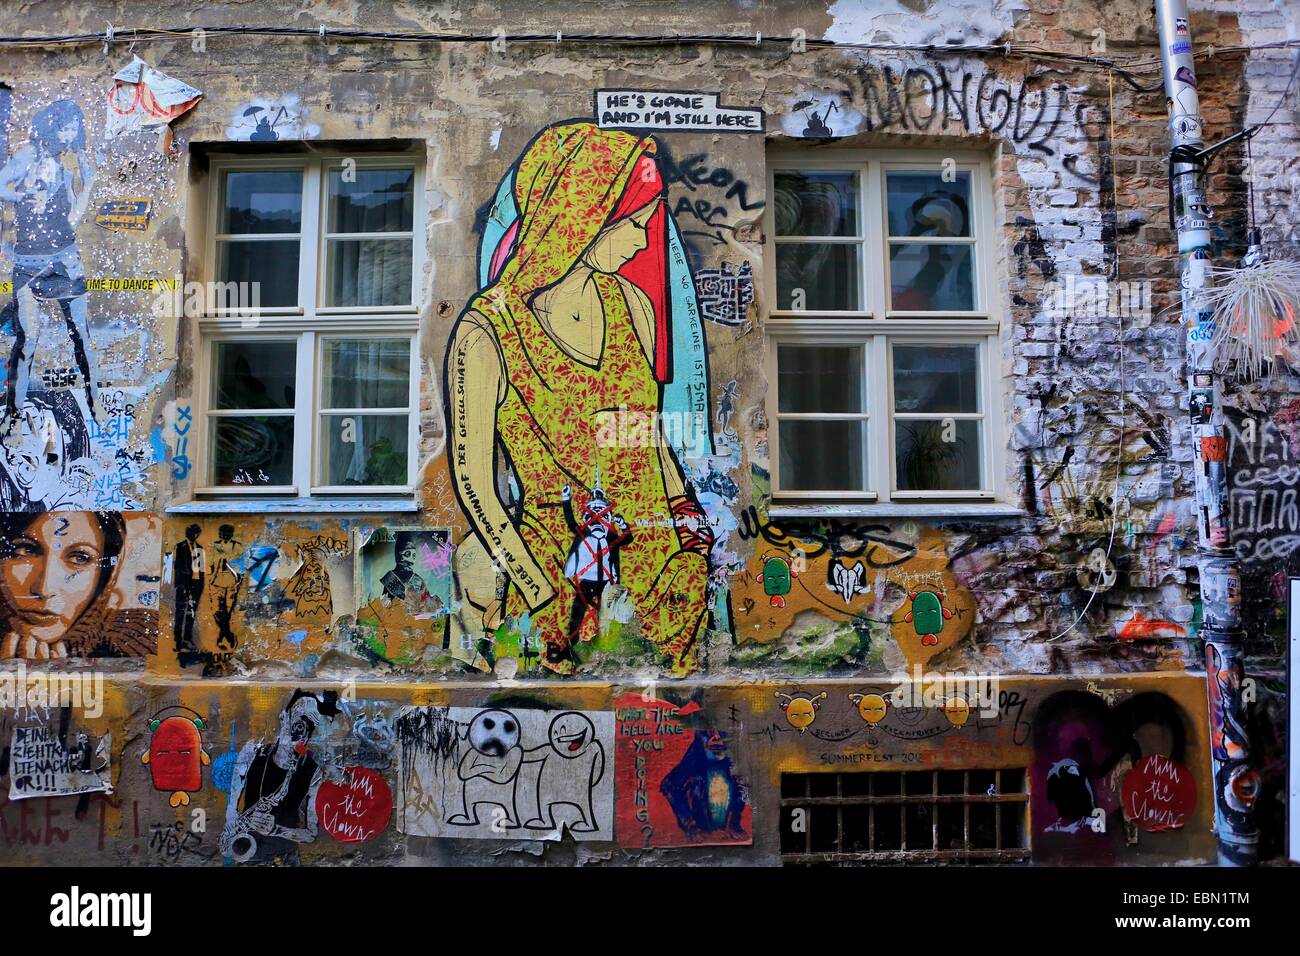 Architettura comunista della Germania orientale coperta di graffiti in un quartiere artistico di Berlino vicino al mercato Hackescher Foto Stock